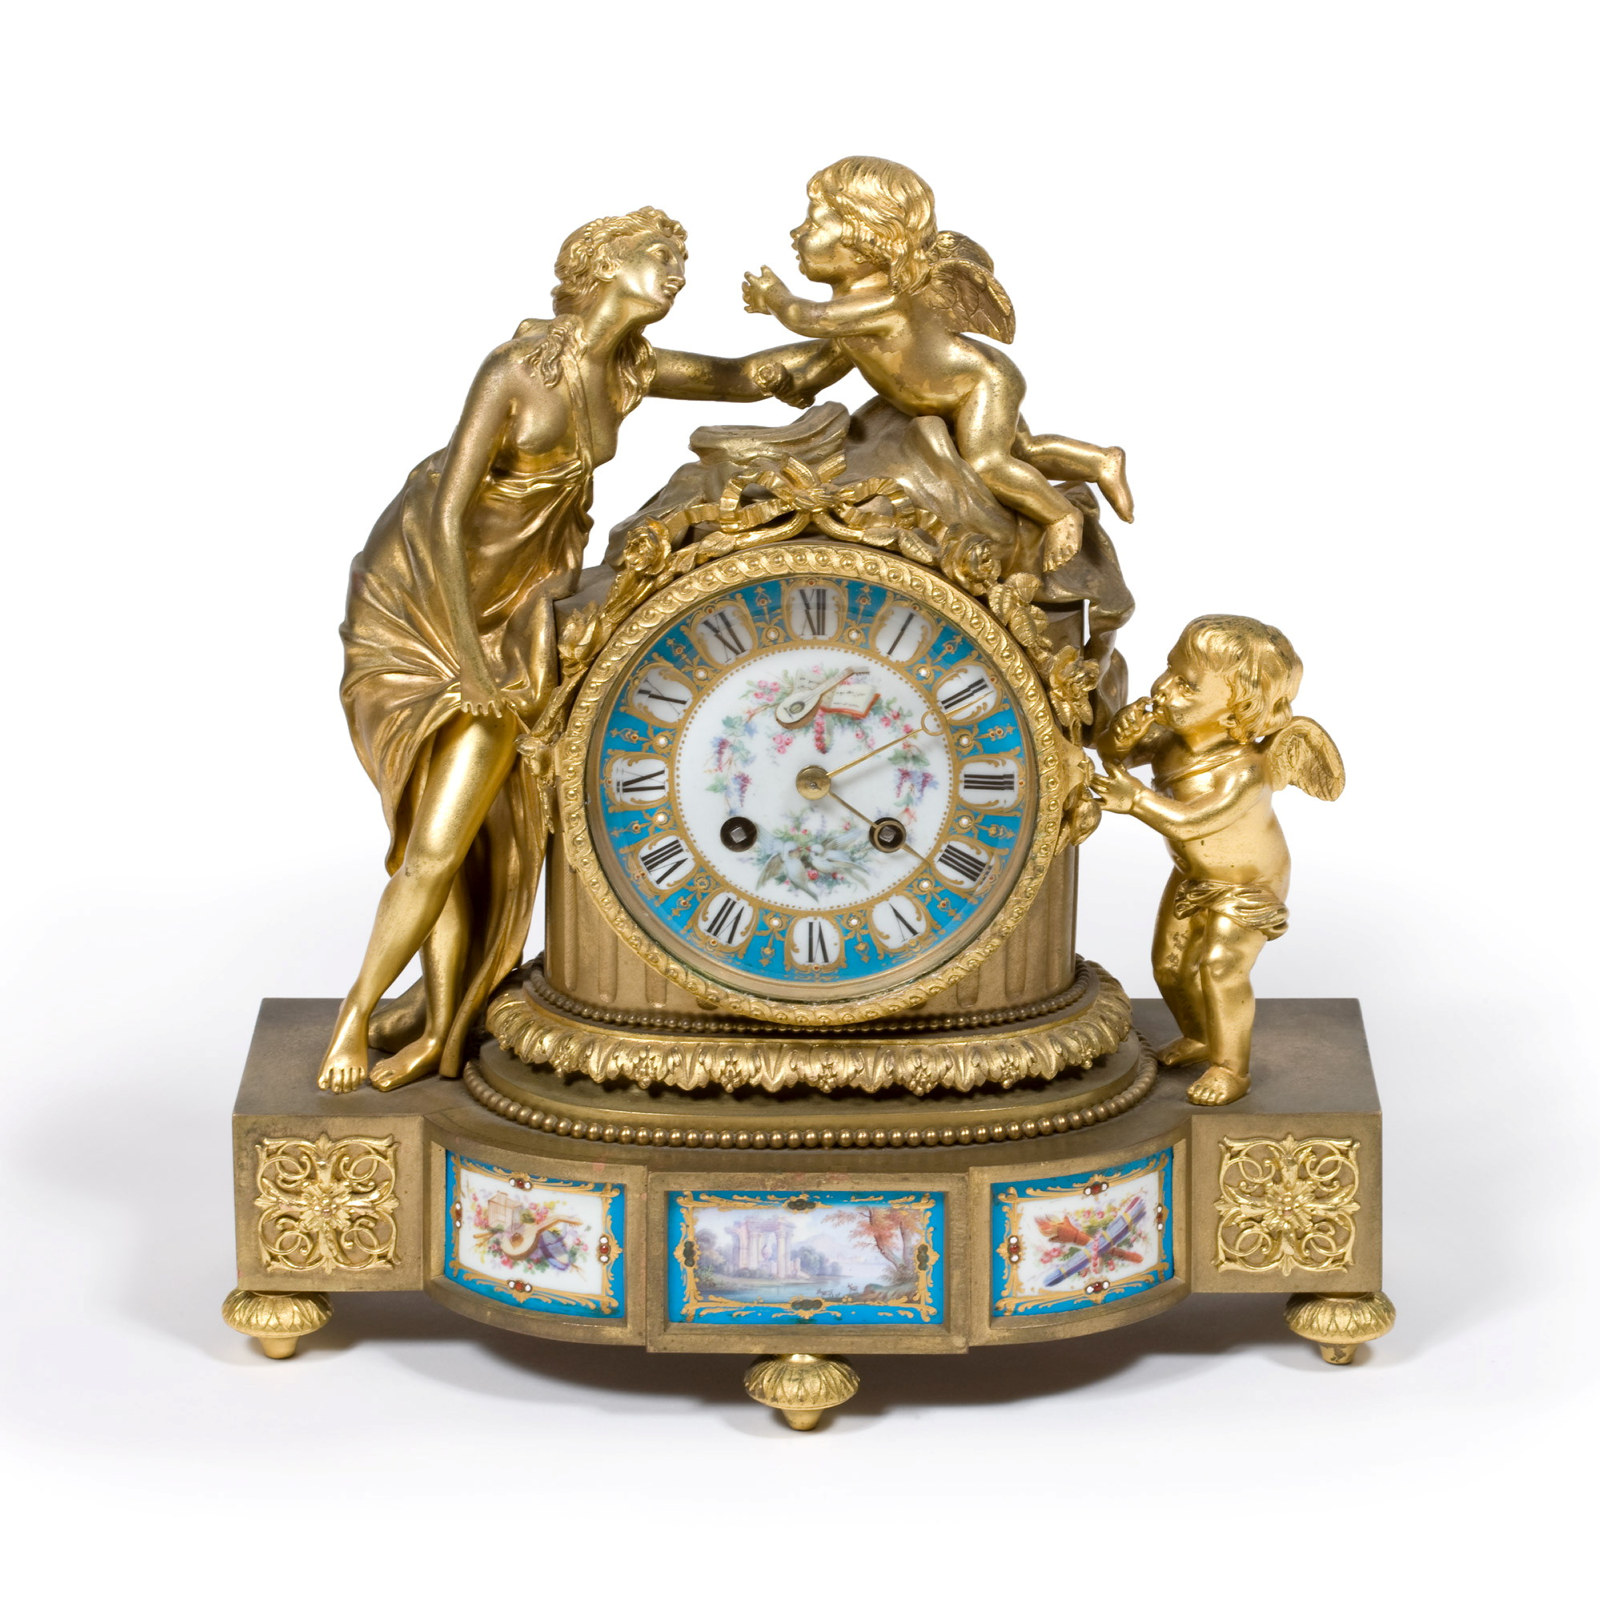 Ornate gold sculpted clock.